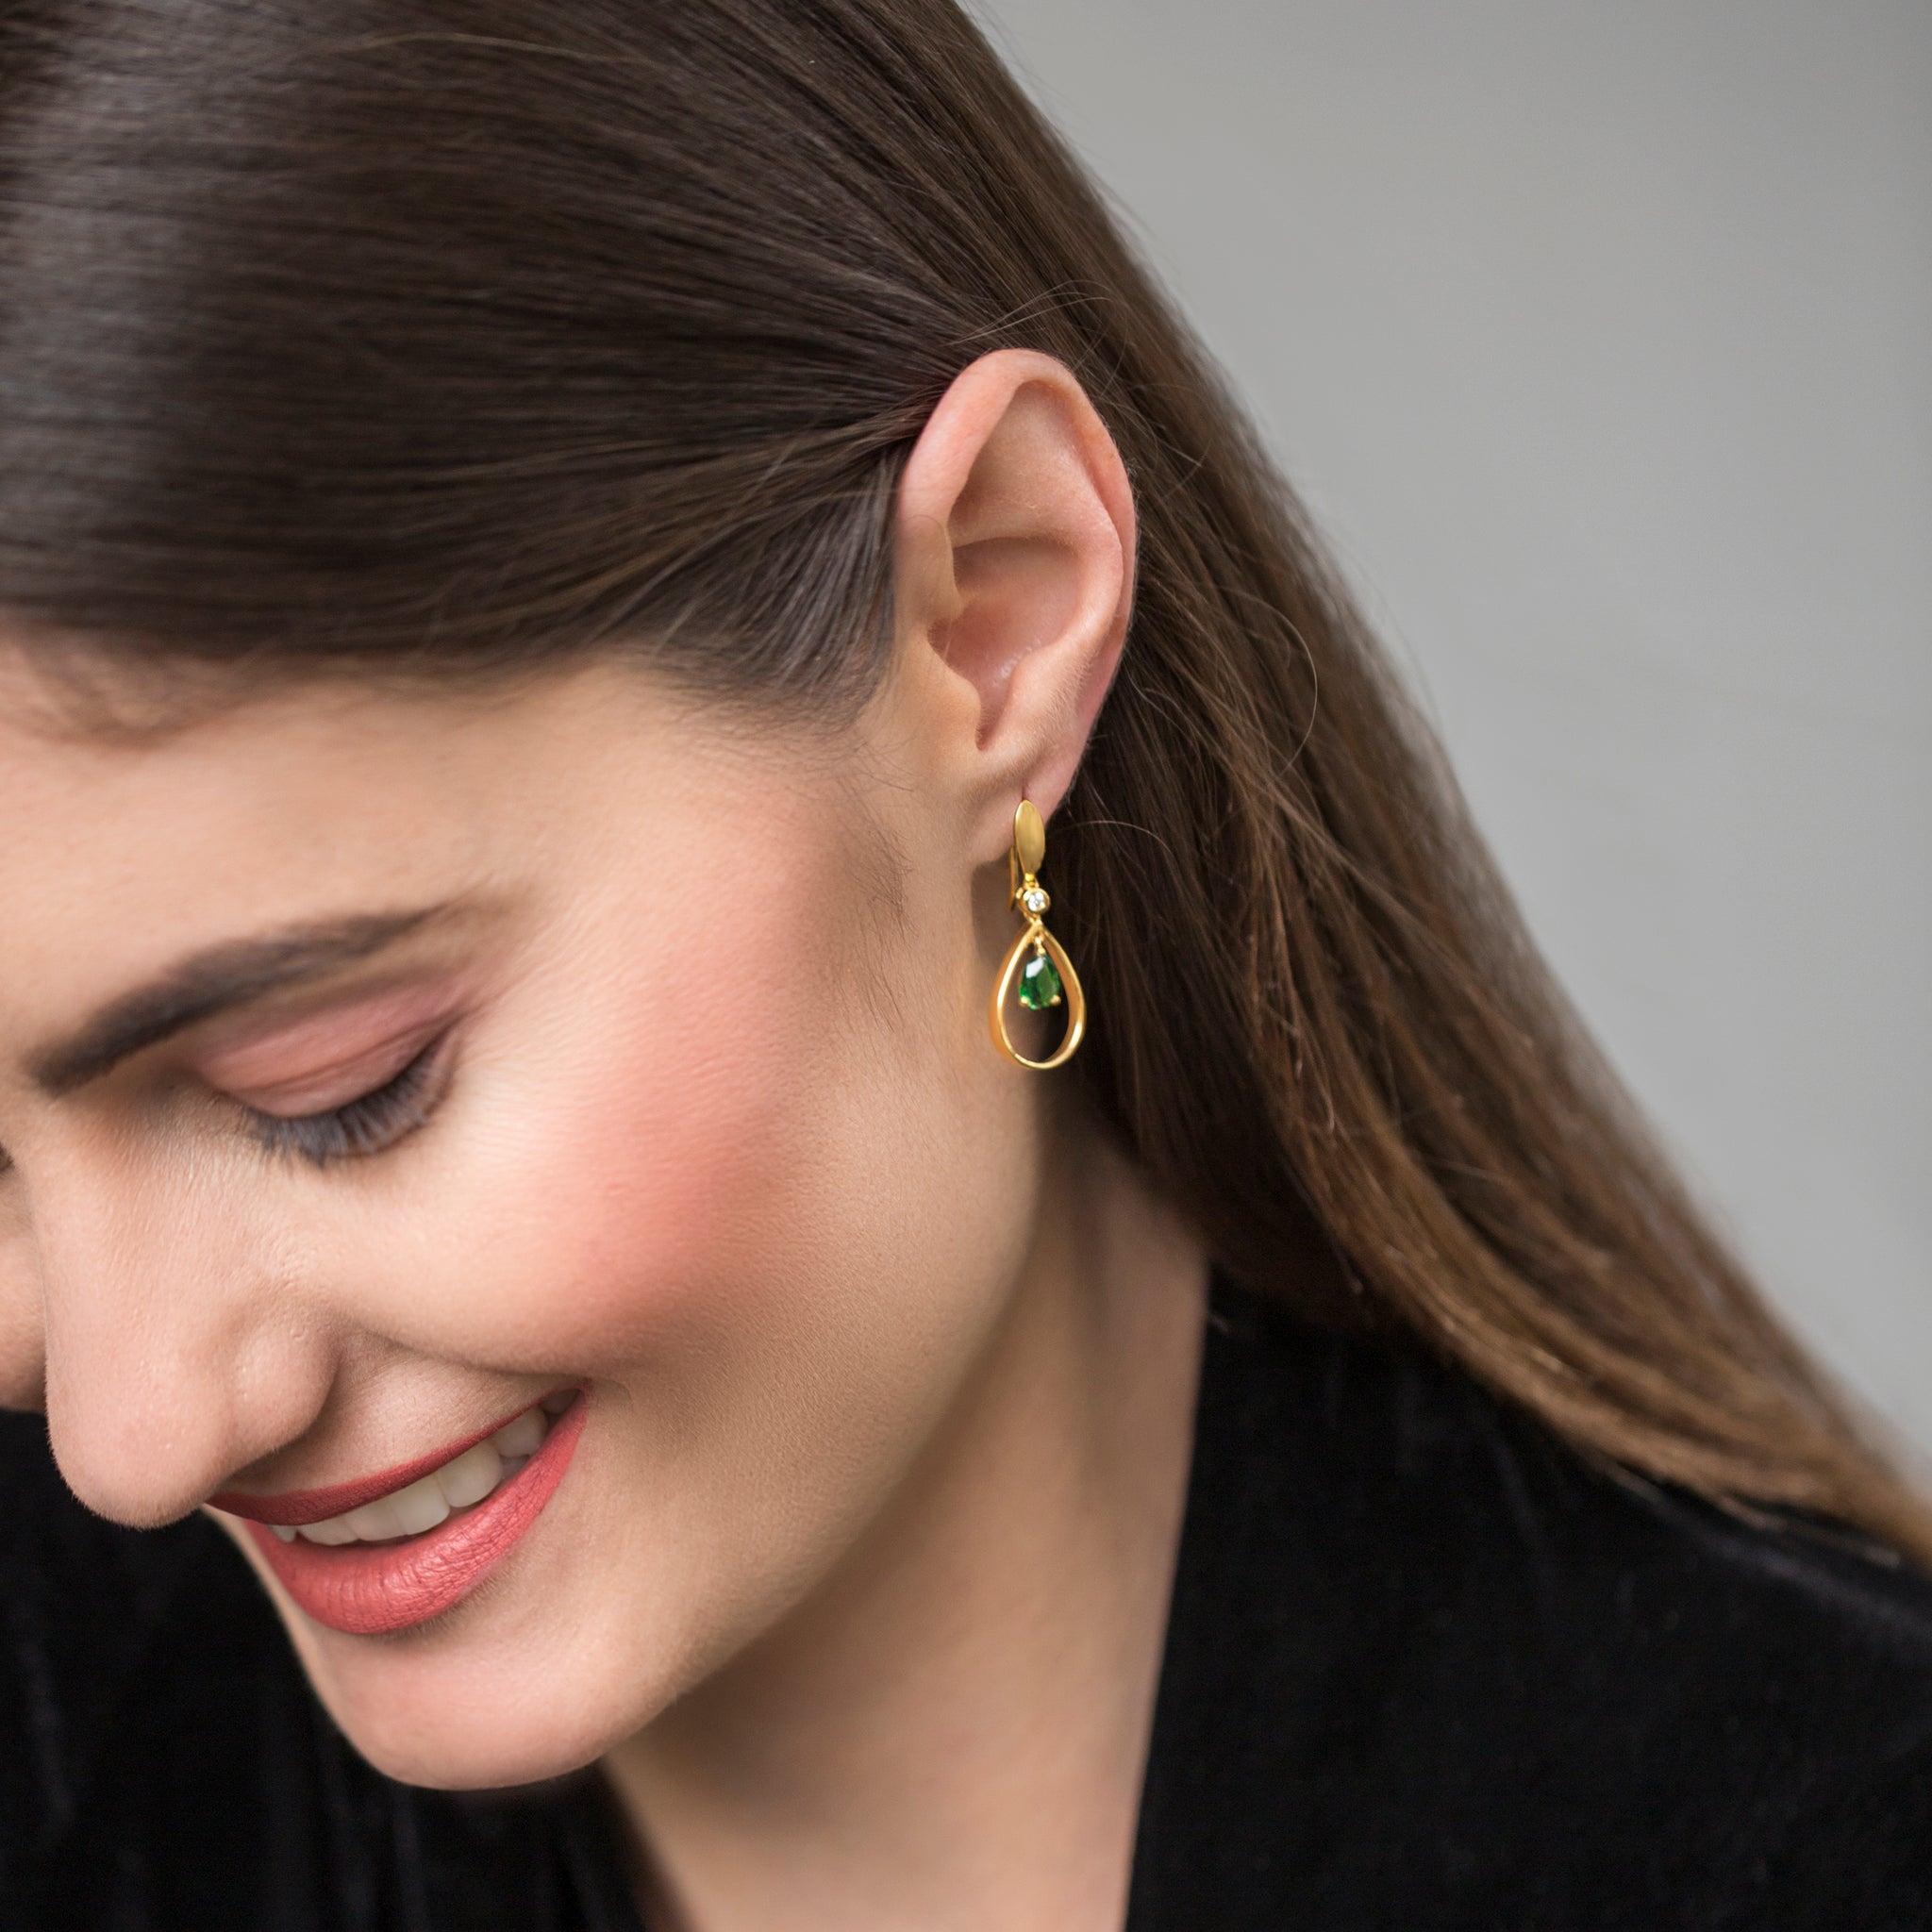 Evergreen Designer Earrings - Gold and Green